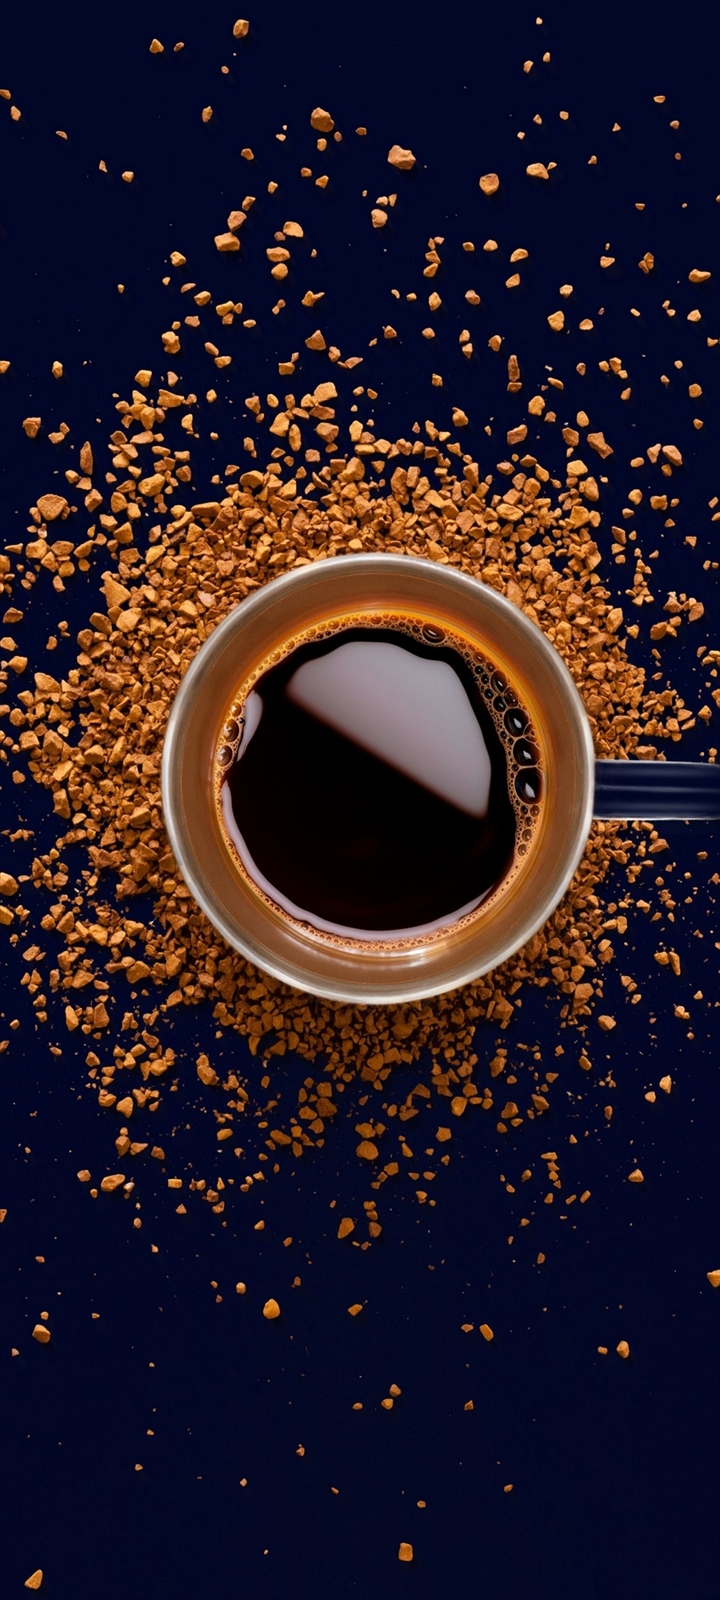 コーヒーと茶色いコーヒー豆 Galaxy A32 5g Androidスマホ壁紙 待ち受け スマラン